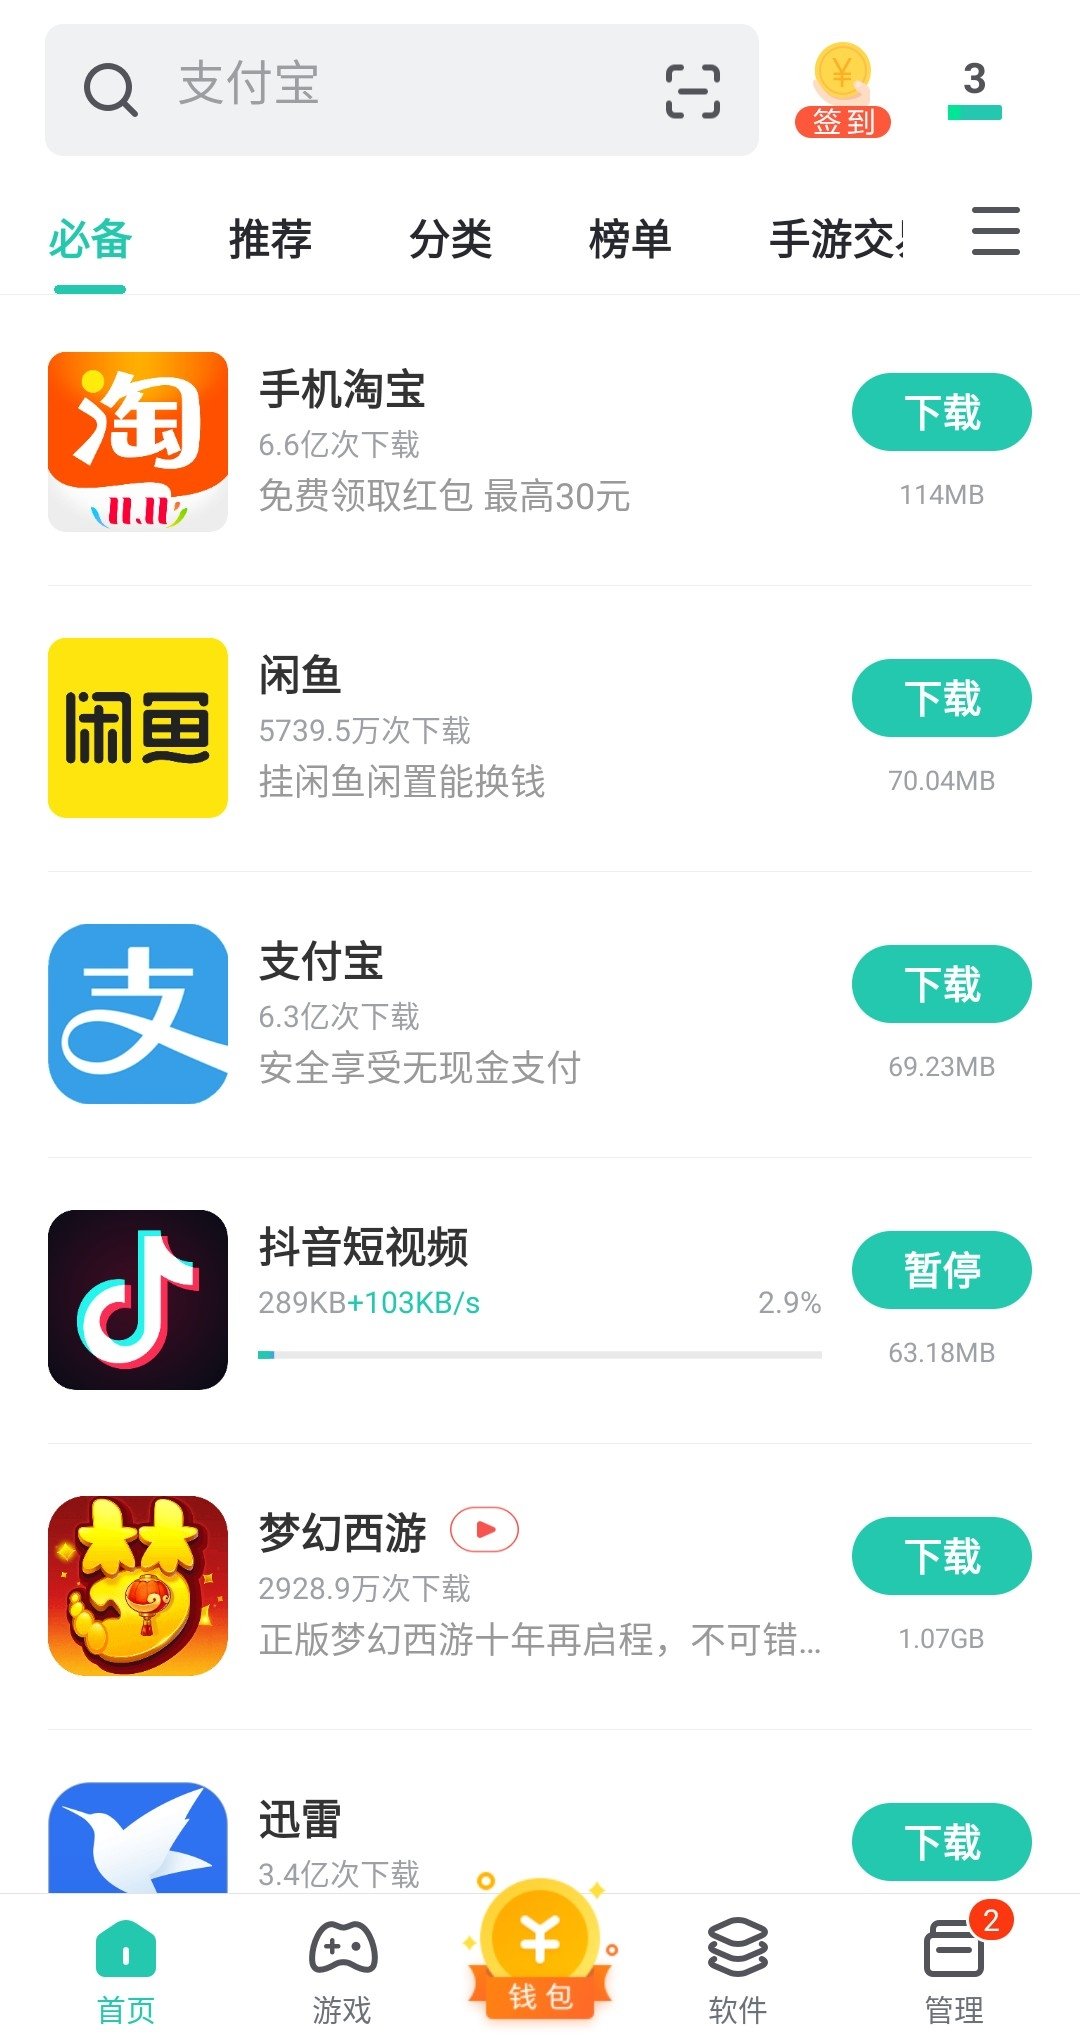 Китайский маркет для андроид. Китайские приложения. Китайские приложения для андроид. Китайский магазин приложений андроид. Китайский магазин приложений для андроид на русском.